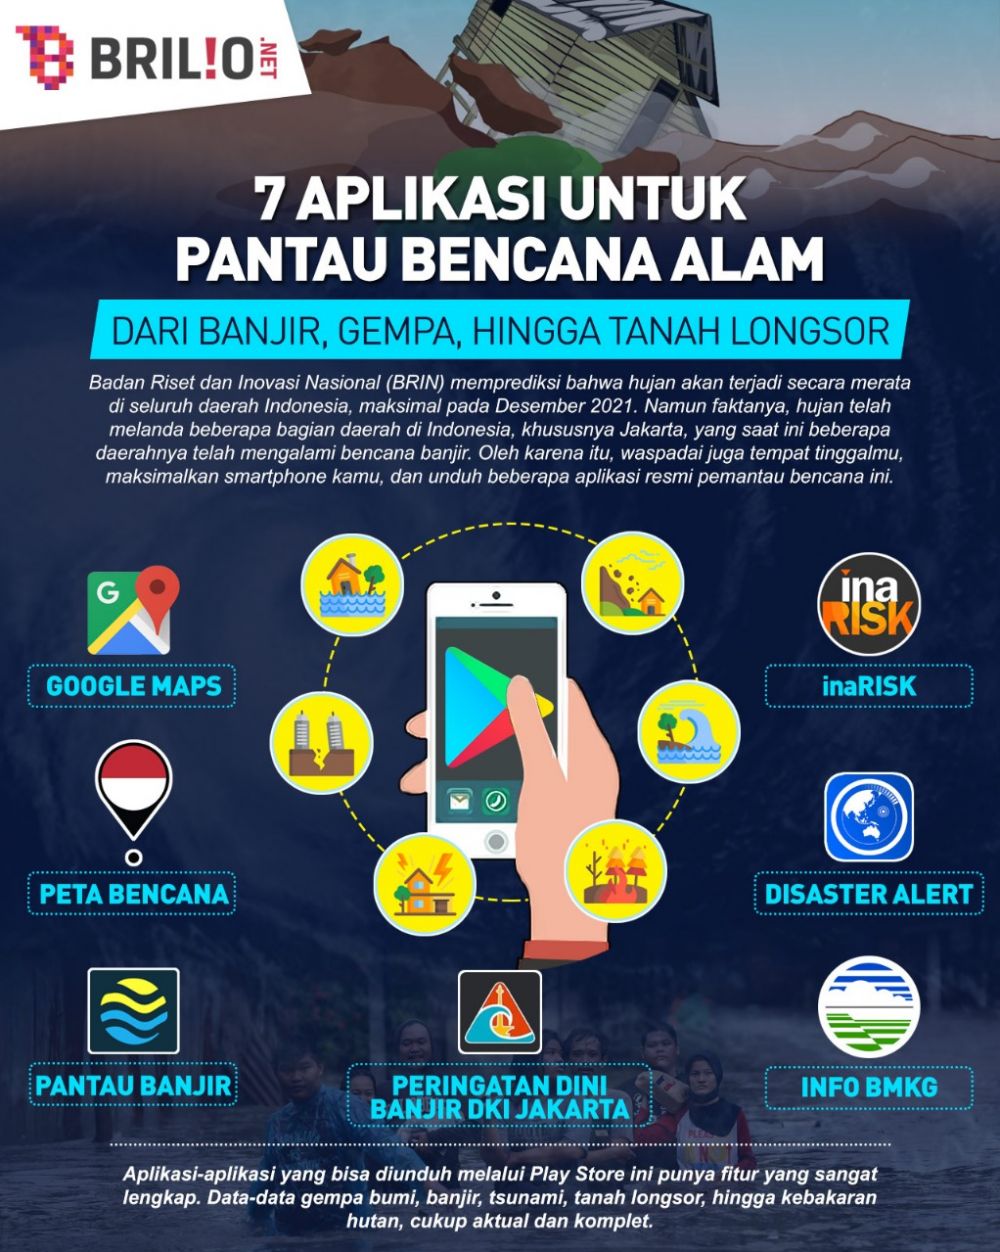 Jakarta banjir lagi, 7 aplikasi ini bantu warga pantau bencana alam